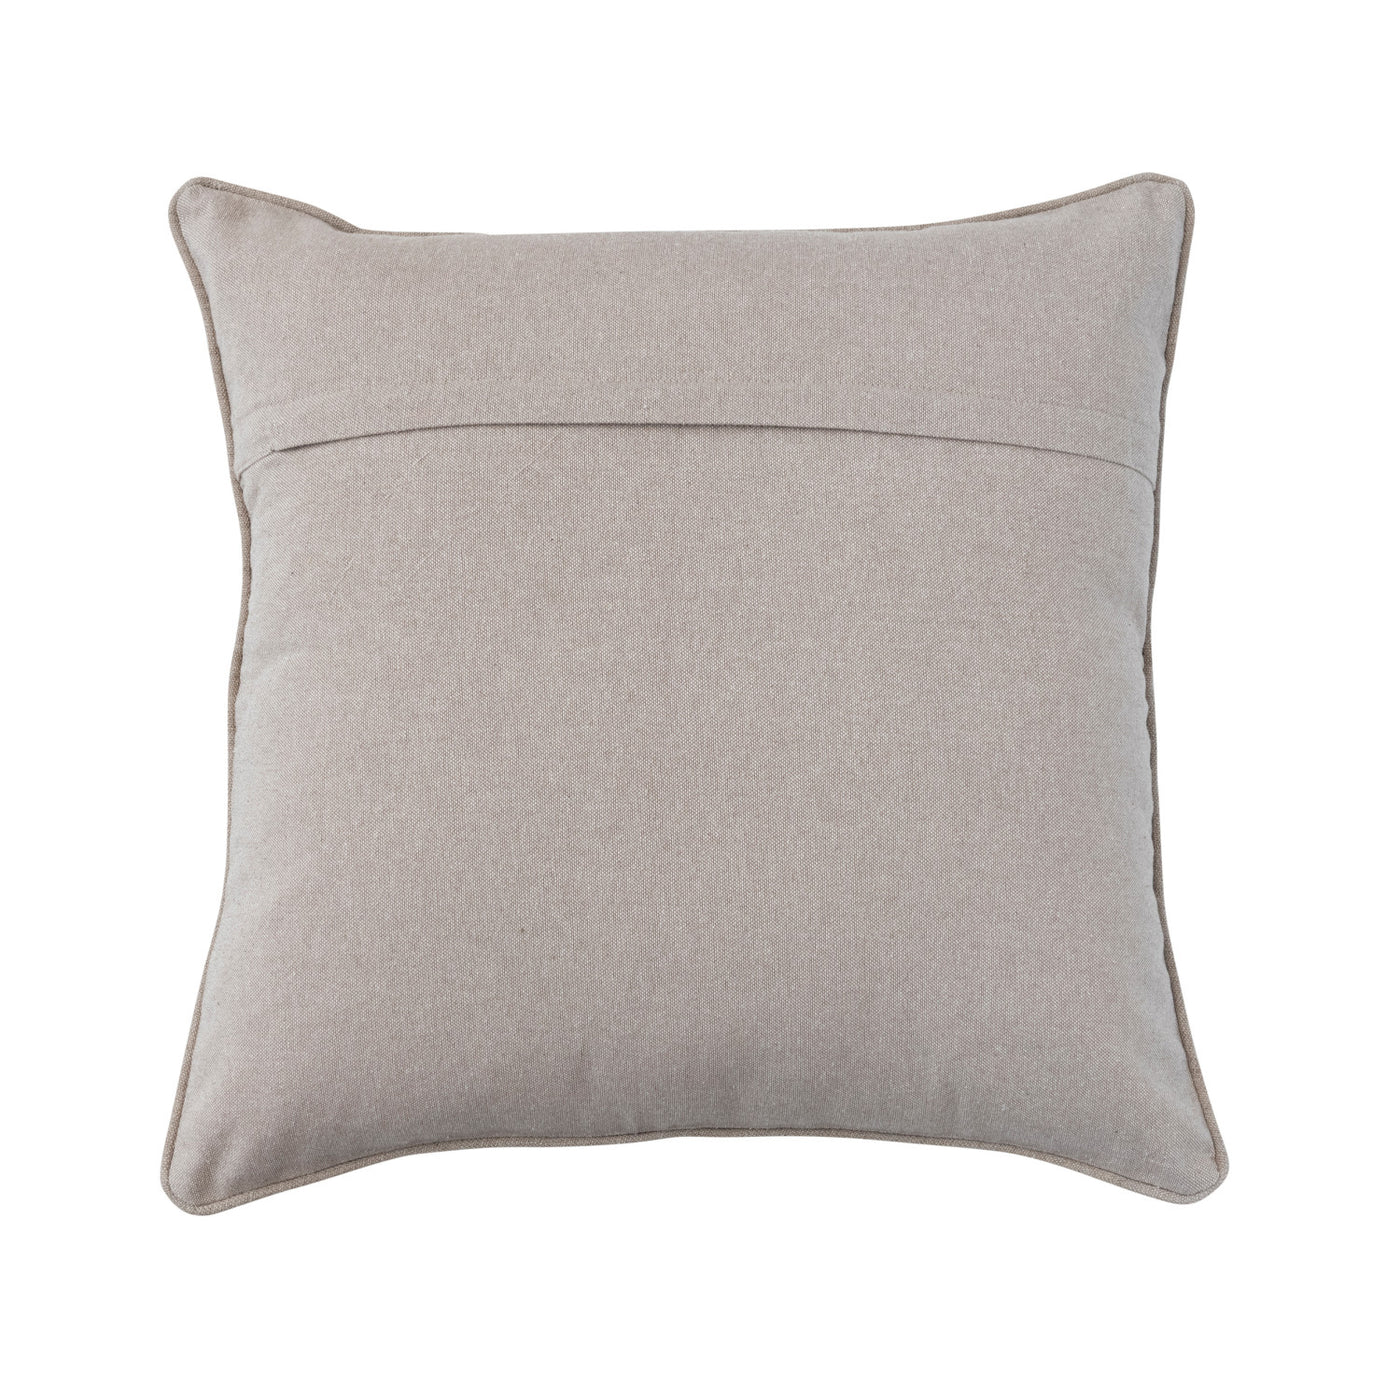 20" Linen & Cotton Pillow w/ Kantha Stitch